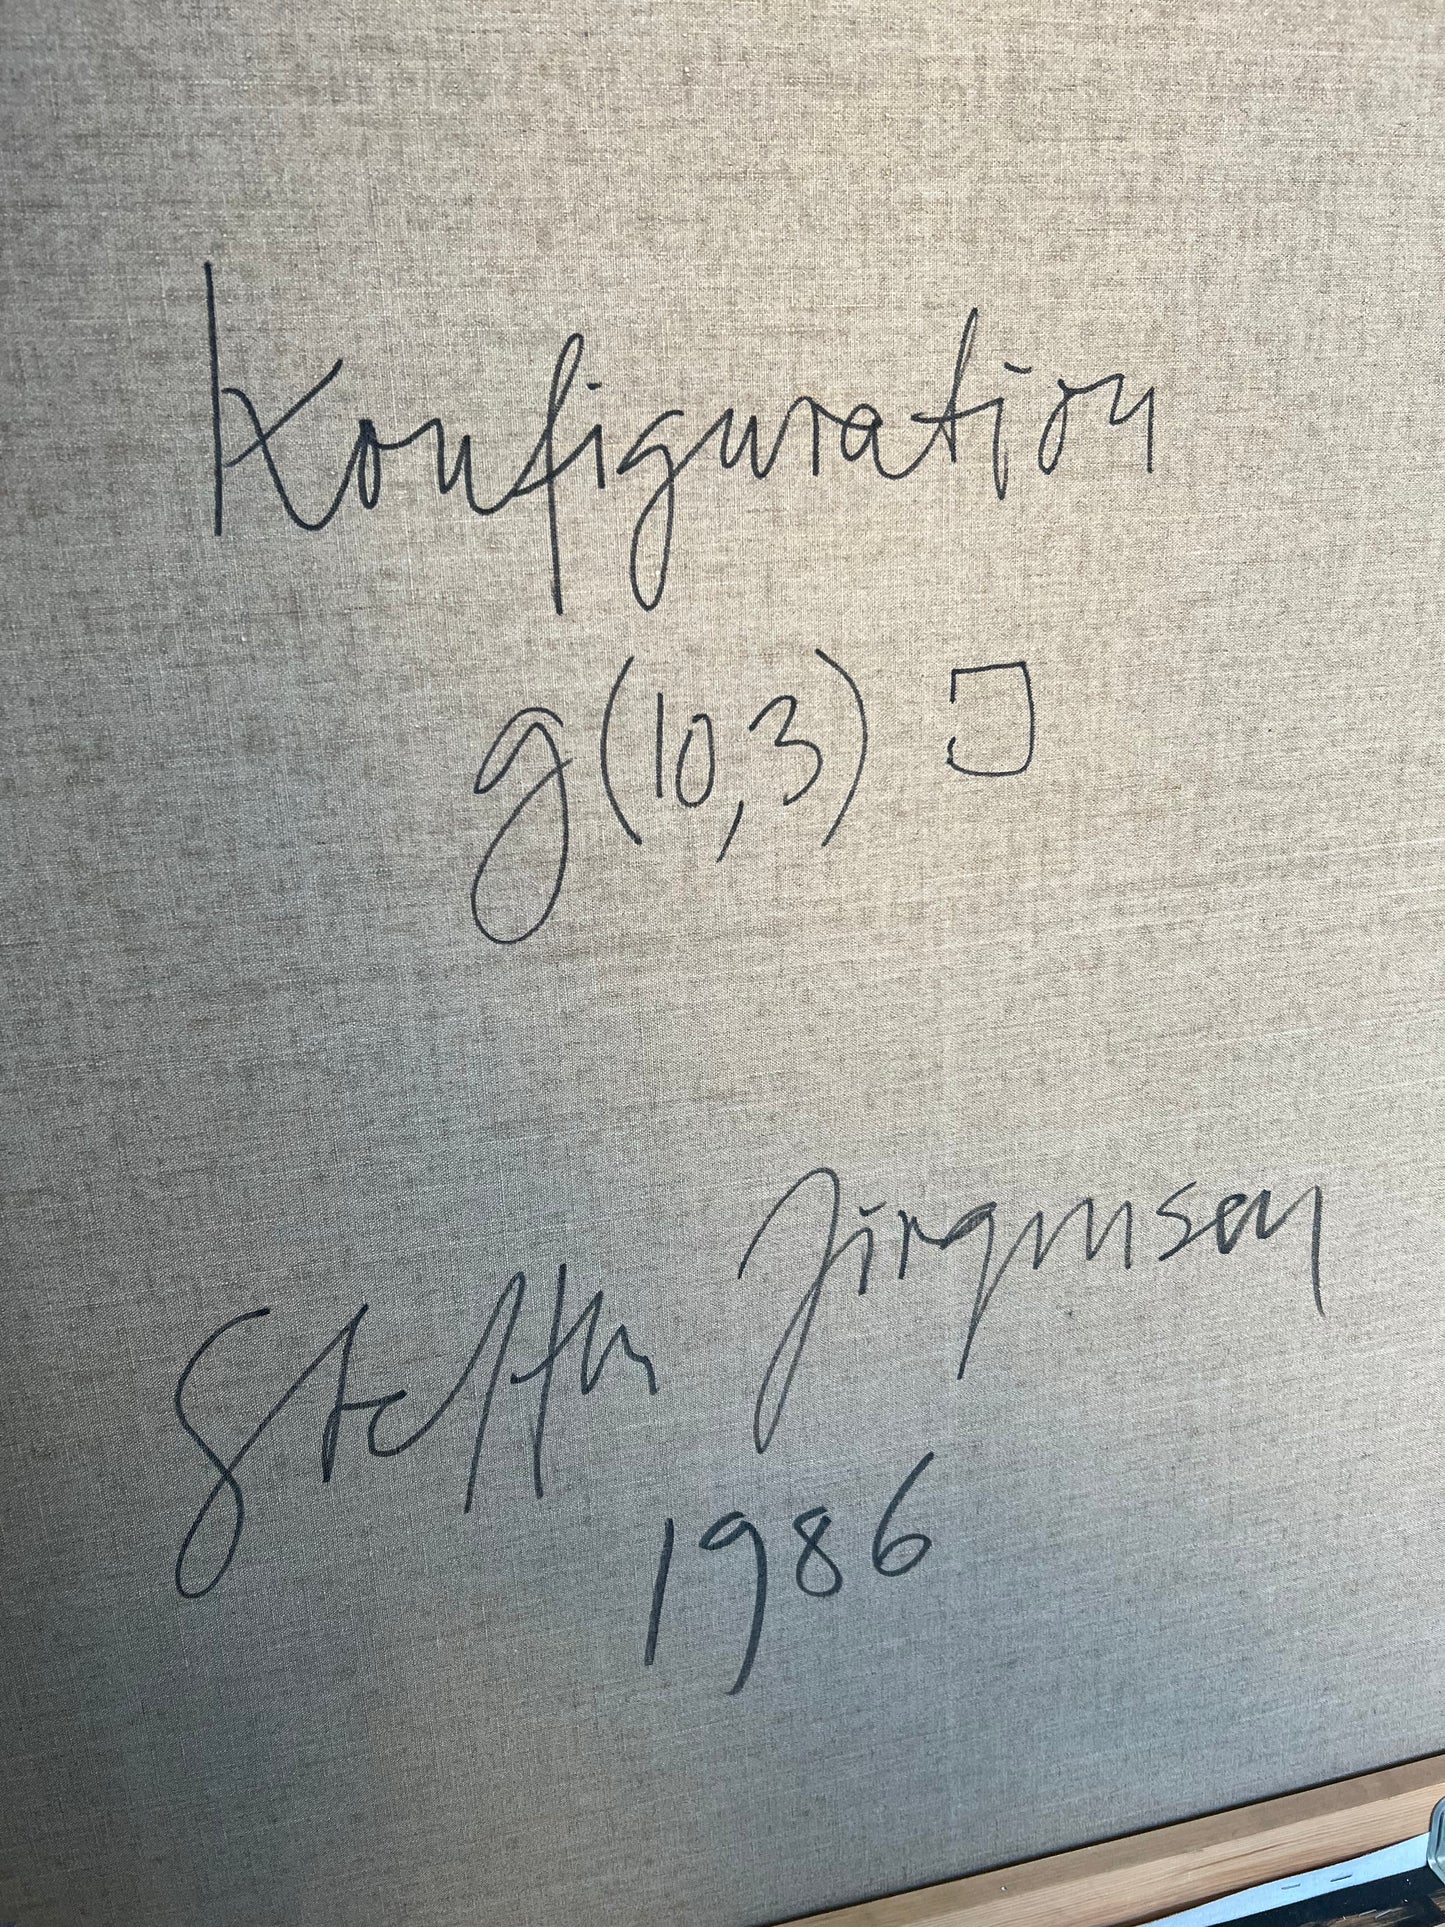 Steffen Jørgensen. “Konfiguration”, 1986